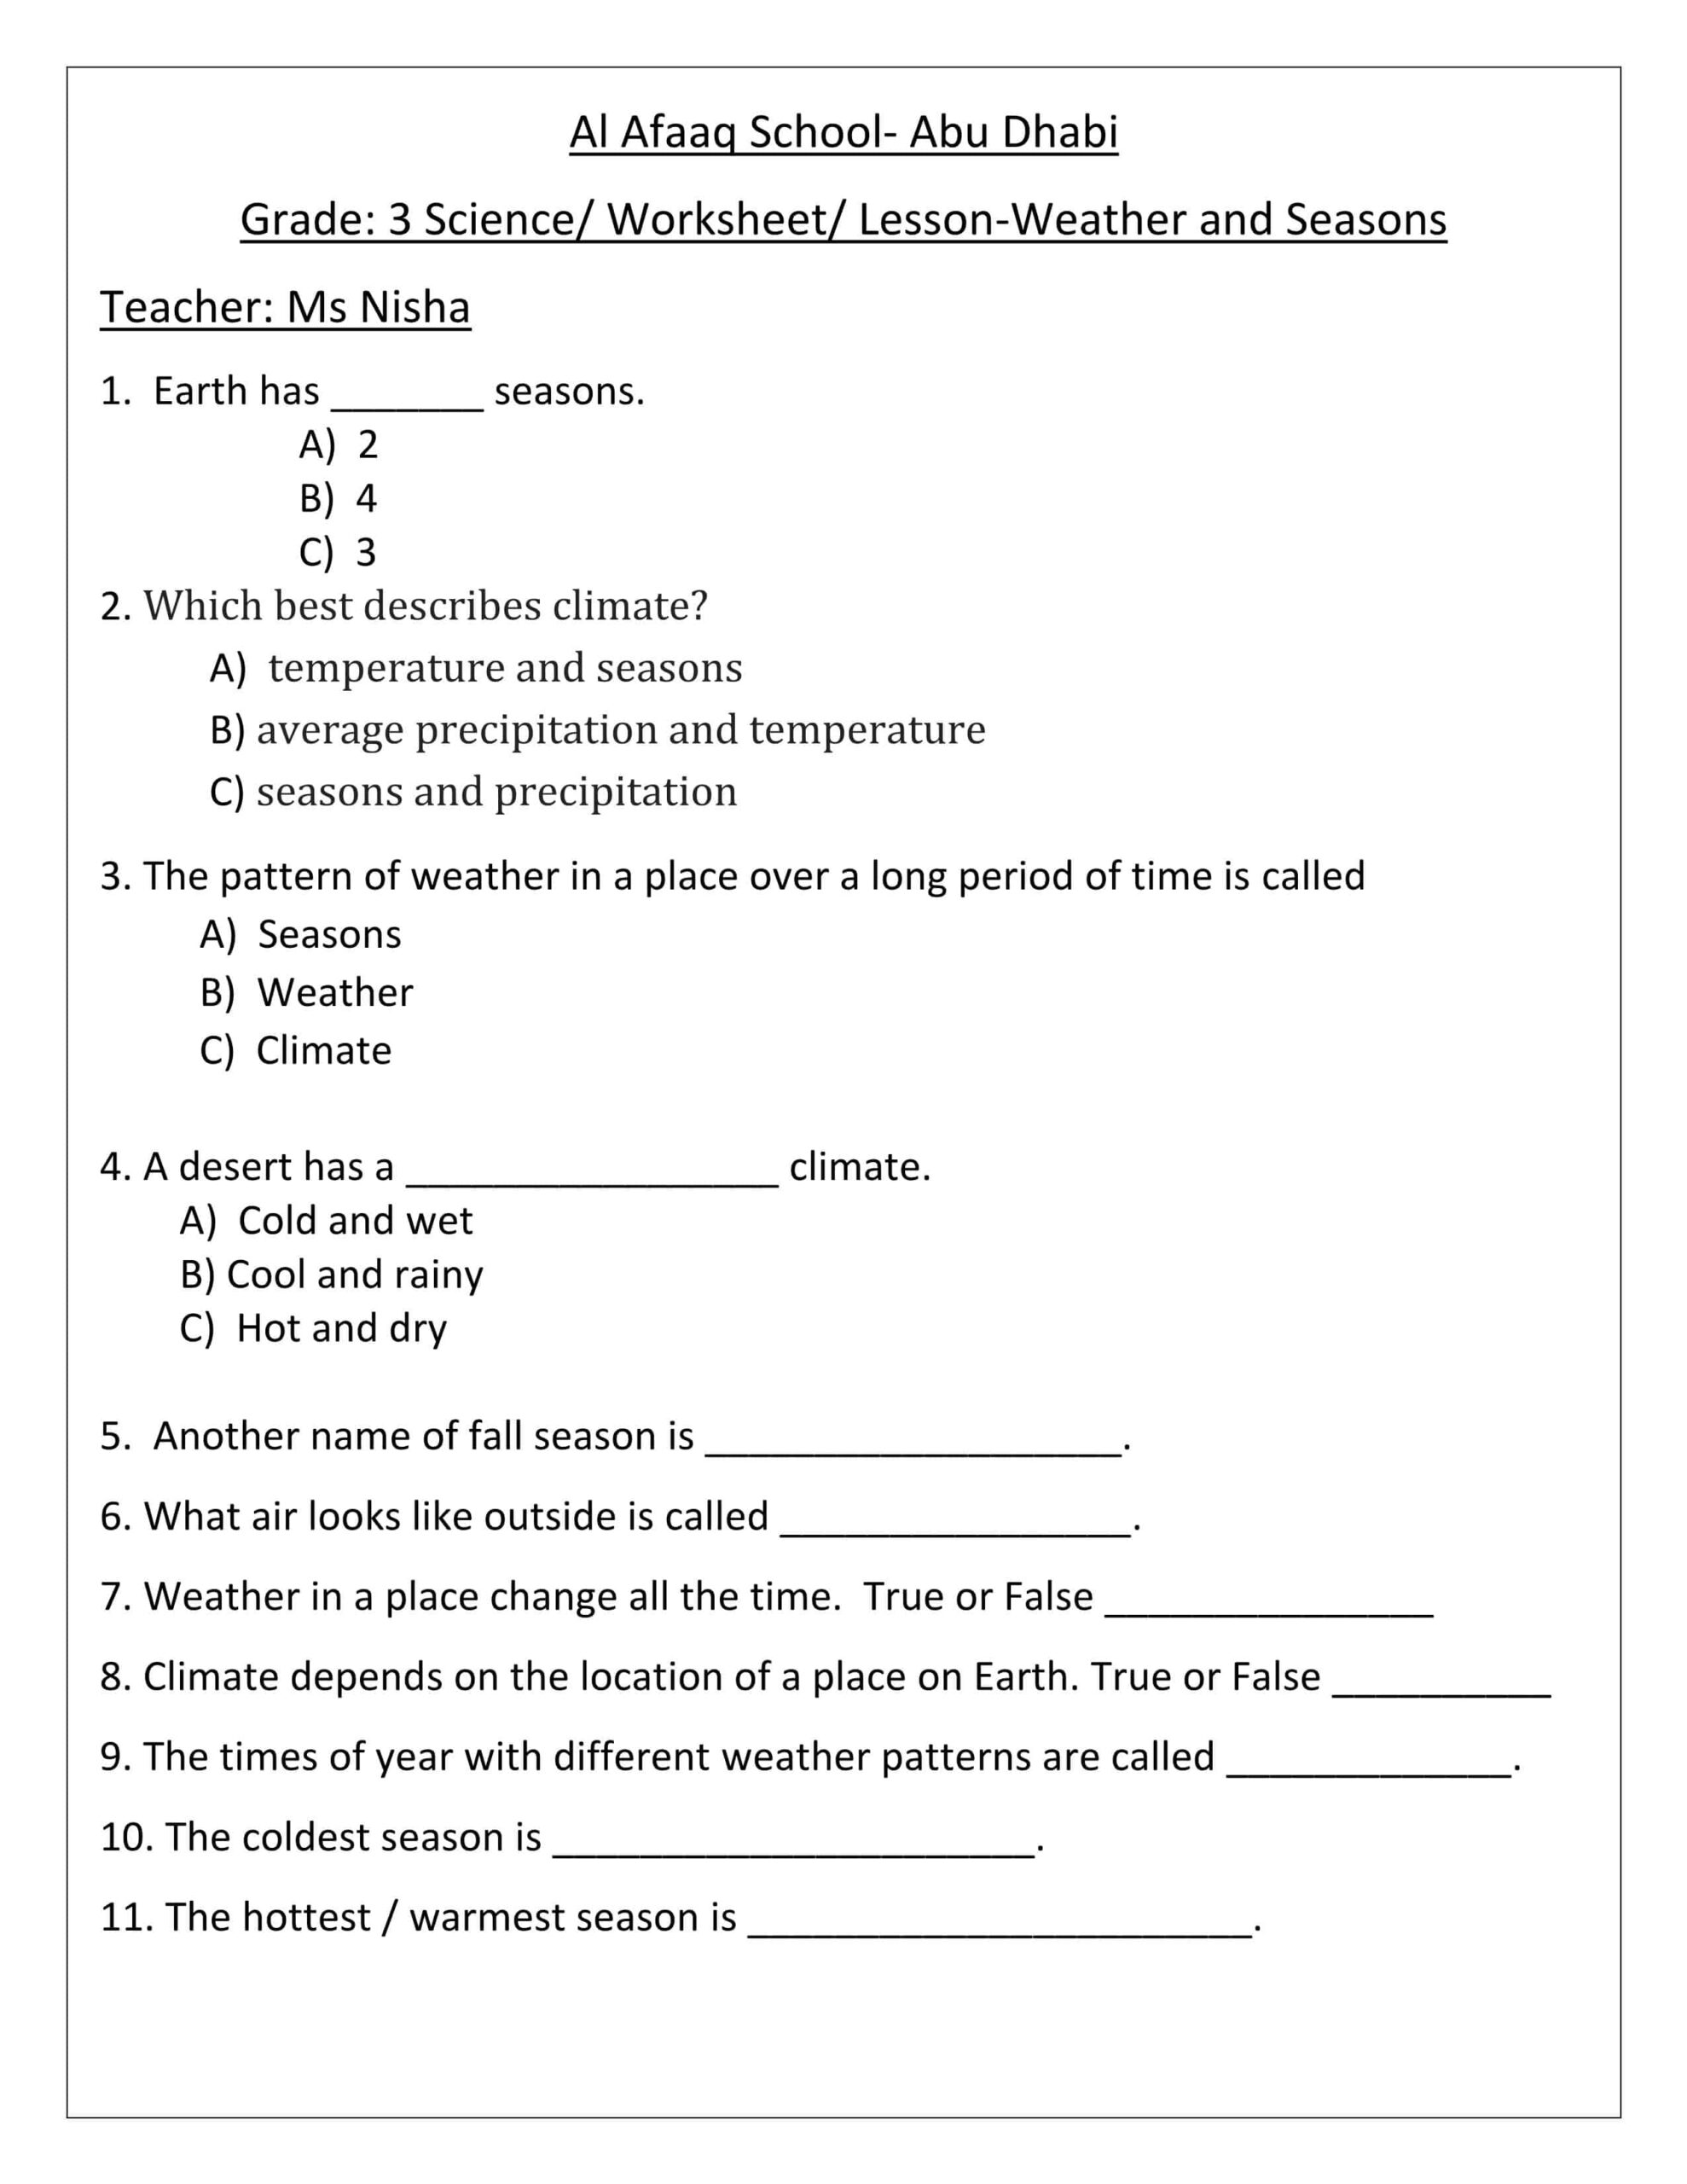 ورقة عمل درس Weather and Seasons العلوم المتكاملة الصف الثالث